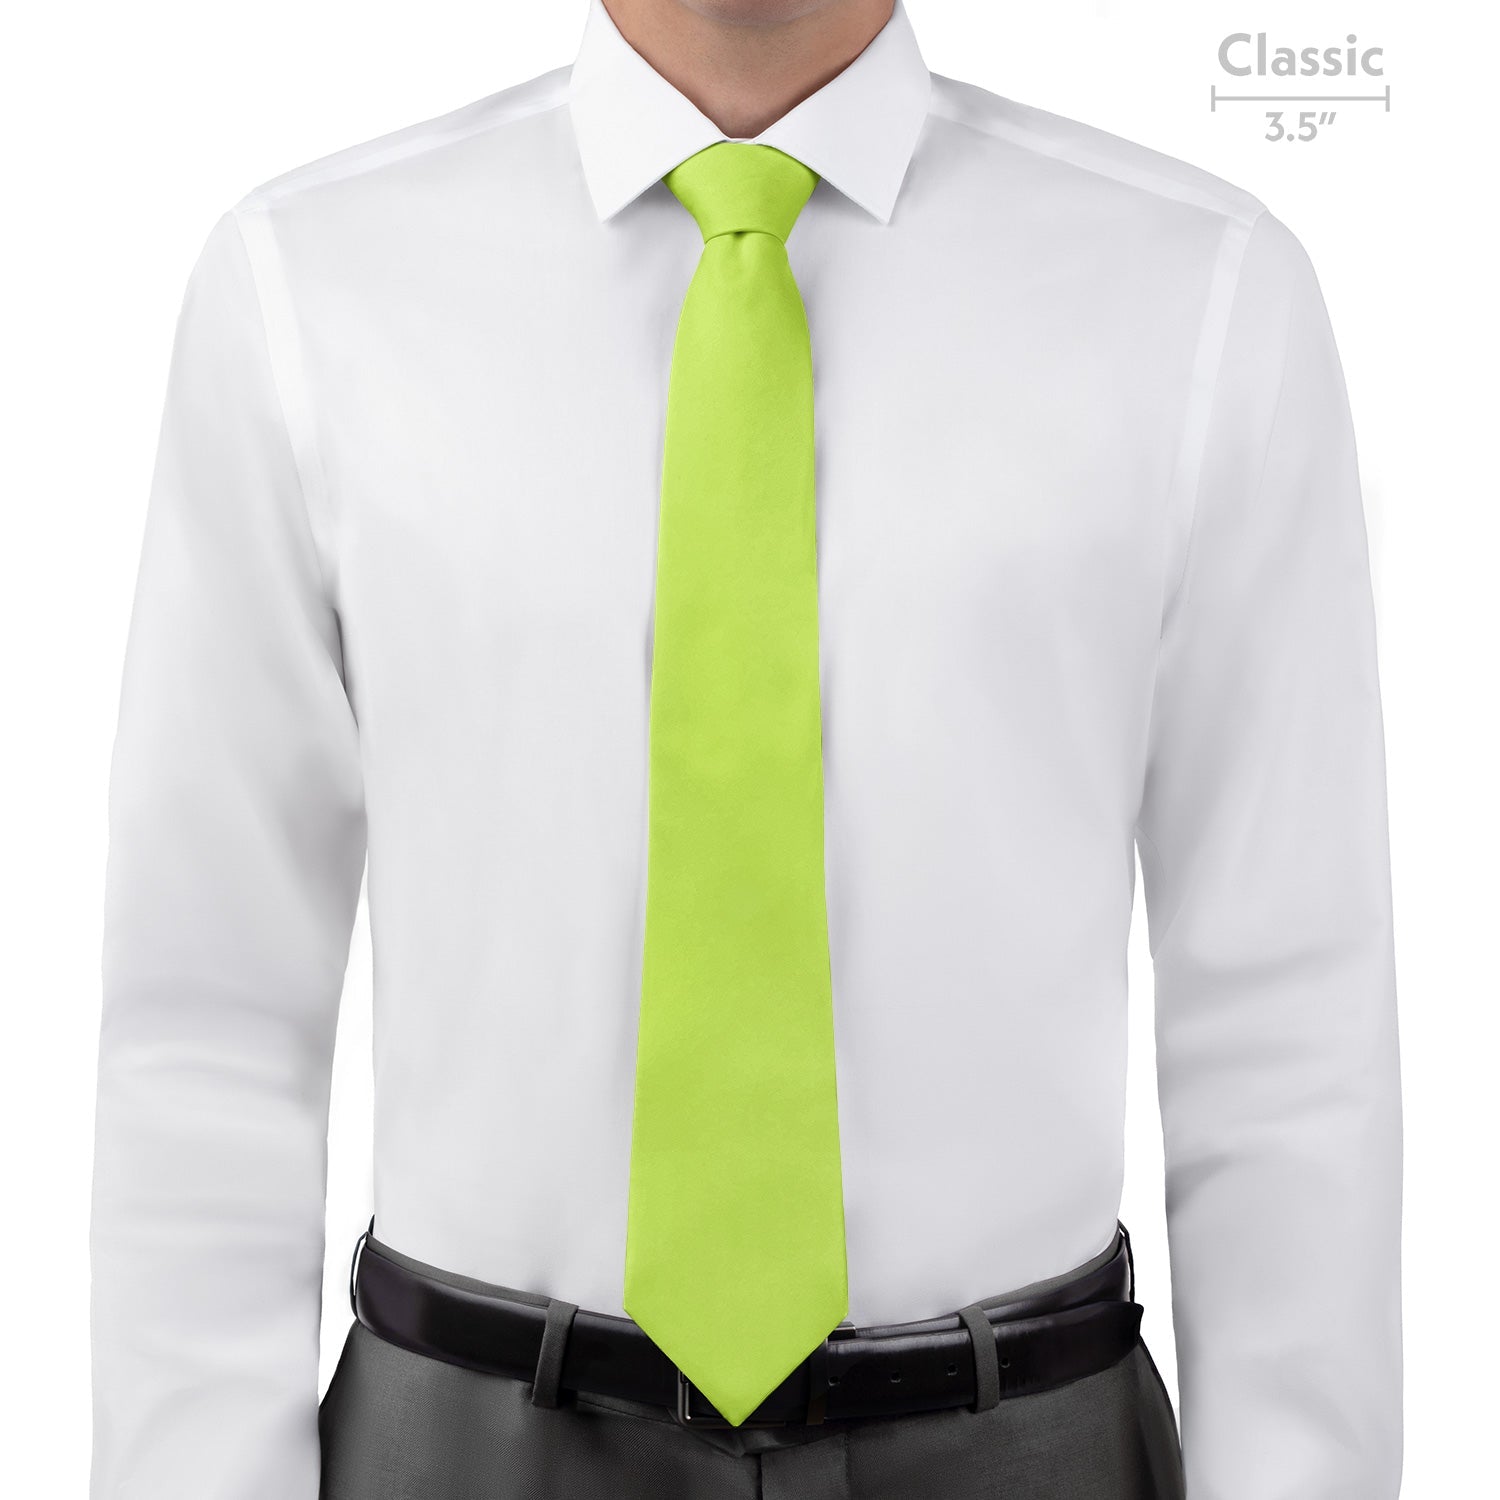 Azazie Pear Necktie - Classic - Knotty Tie Co.